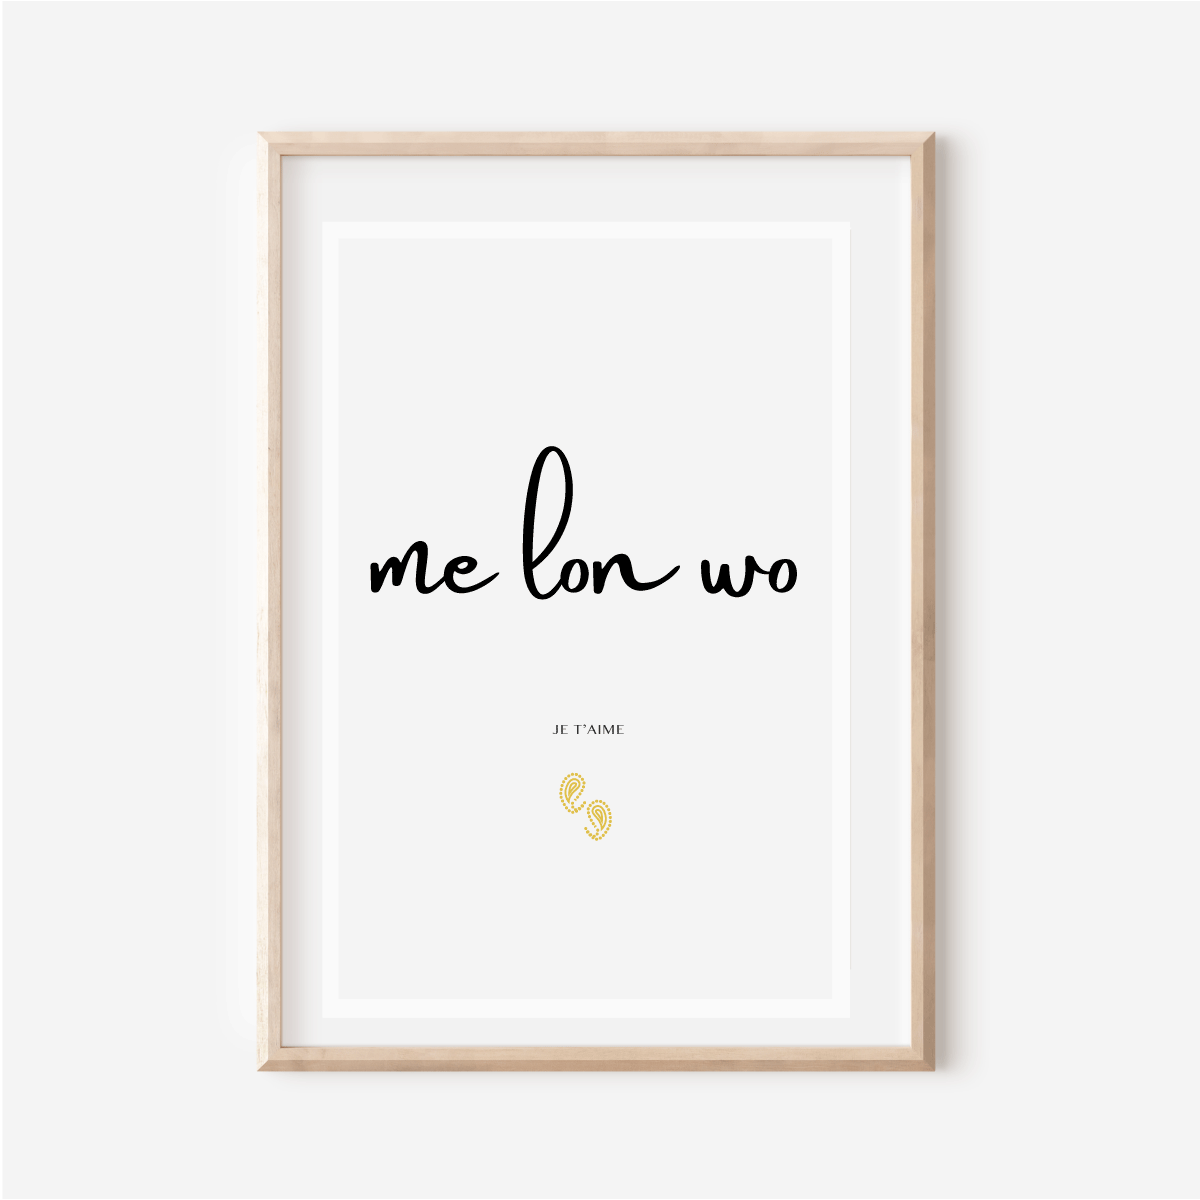 "Me lon wo" - I love you in Ewe